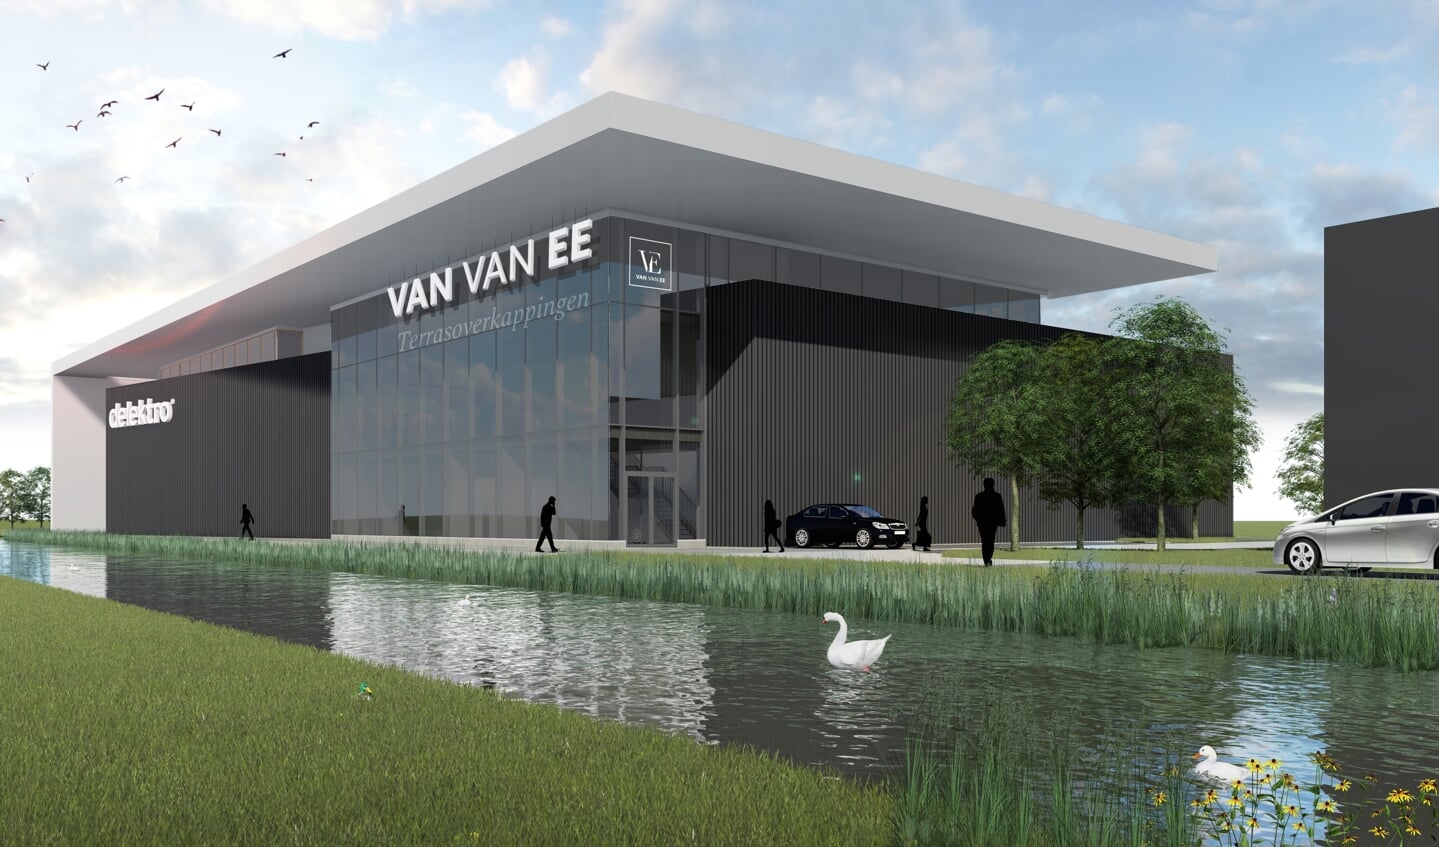 Van van Ee is gevestigd op bedrijventerrein BT A12.